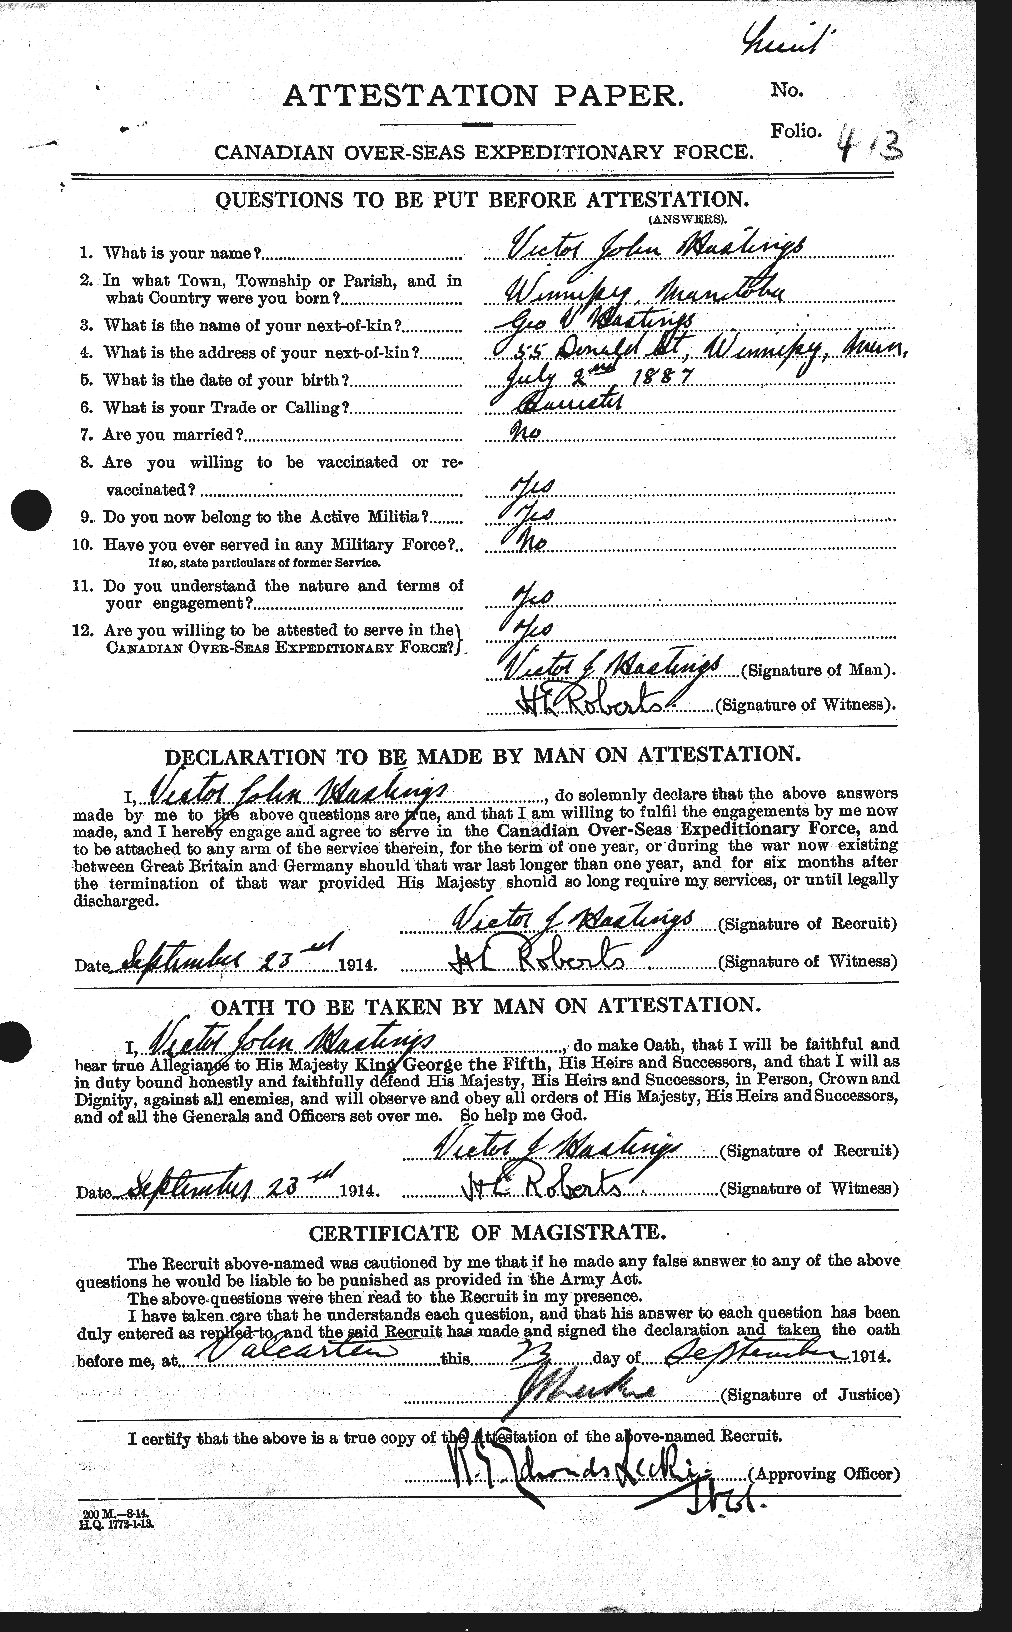 Dossiers du Personnel de la Première Guerre mondiale - CEC 388254a